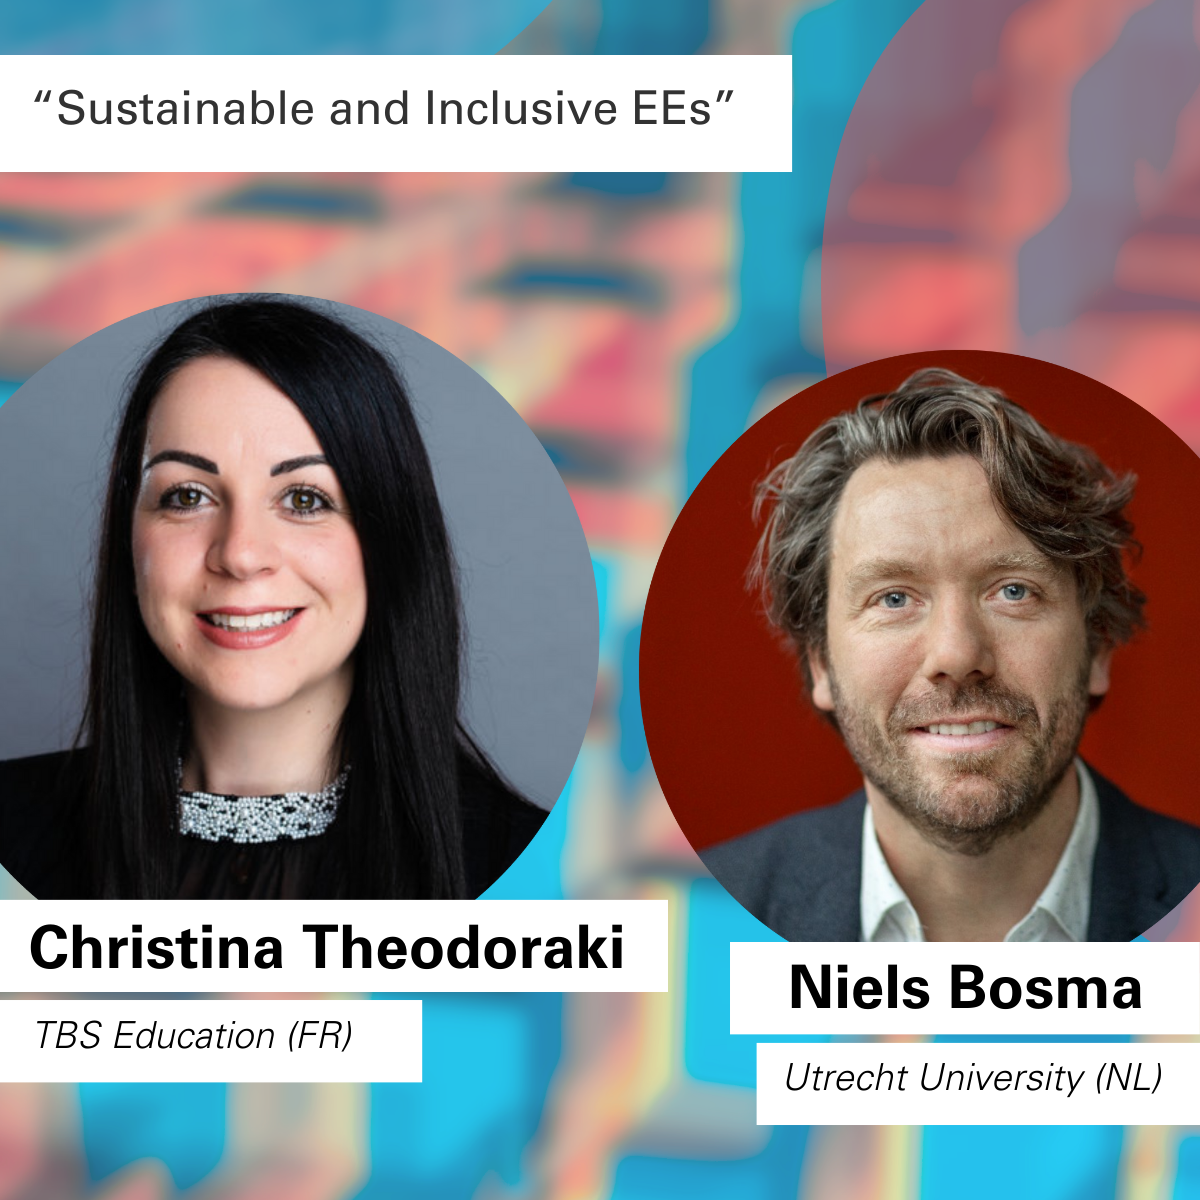 Christina Theodoraki (TBS Education, FR) und Niels Bosma (Universität Utrecht, NL) werden als Experten zum Thema "Nachhaltige und integrative EEs" sprechen.